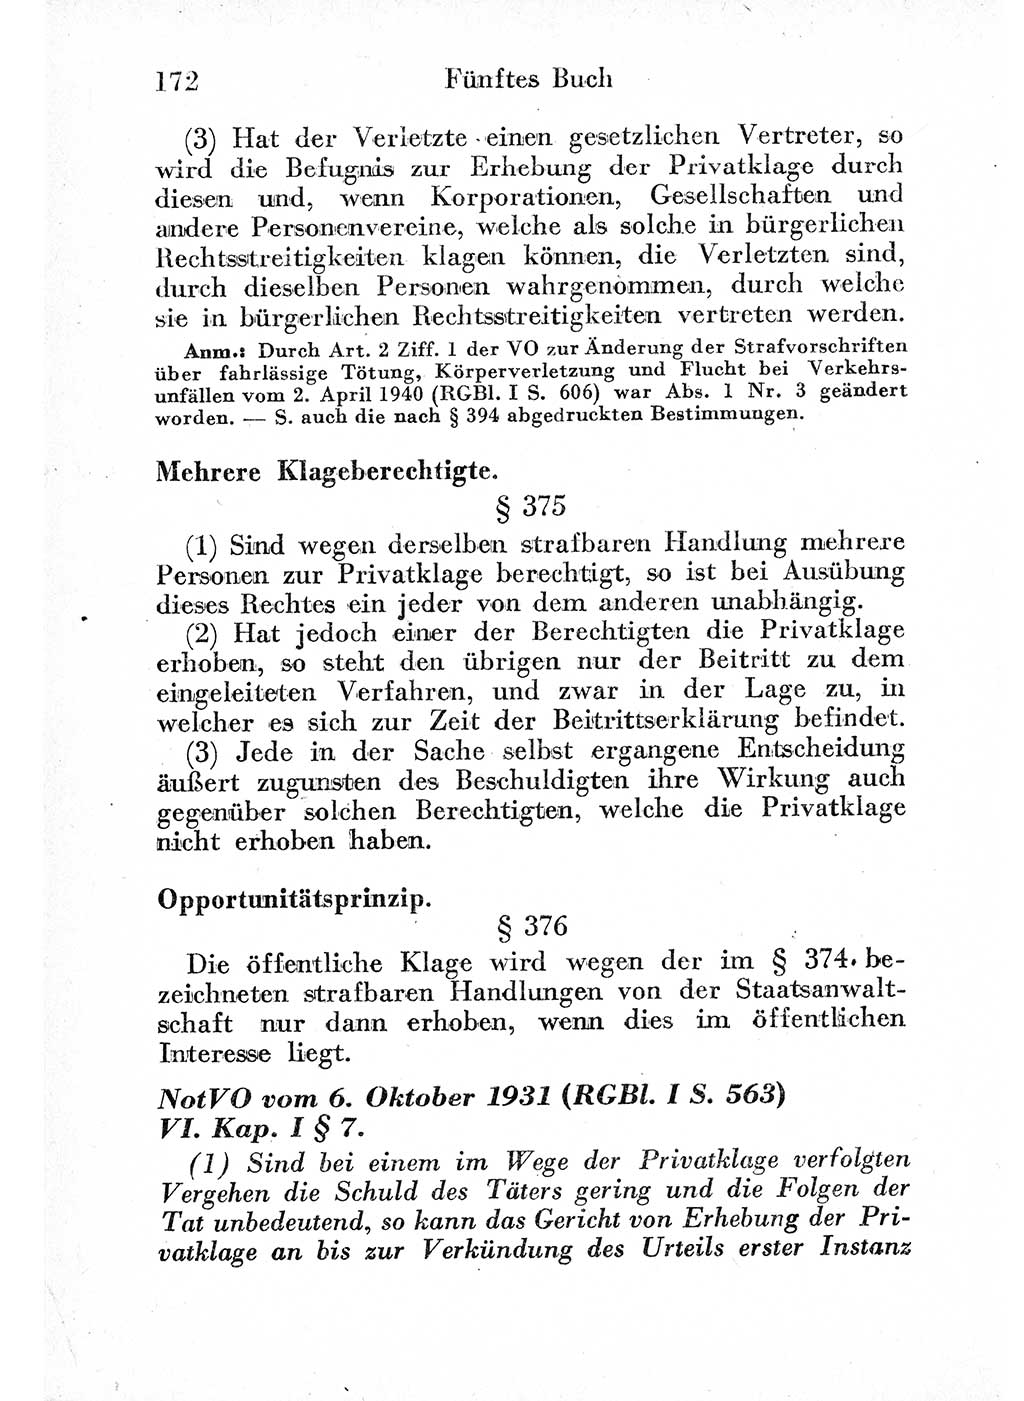 Strafprozeßordnung (StPO), Gerichtsverfassungsgesetz (GVG) und zahlreiche Nebengesetze der sowjetischen Besatzungszone (SBZ) in Deutschland 1949, Seite 172 (StPO GVG Ges. SBZ Dtl. 1949, S. 172)